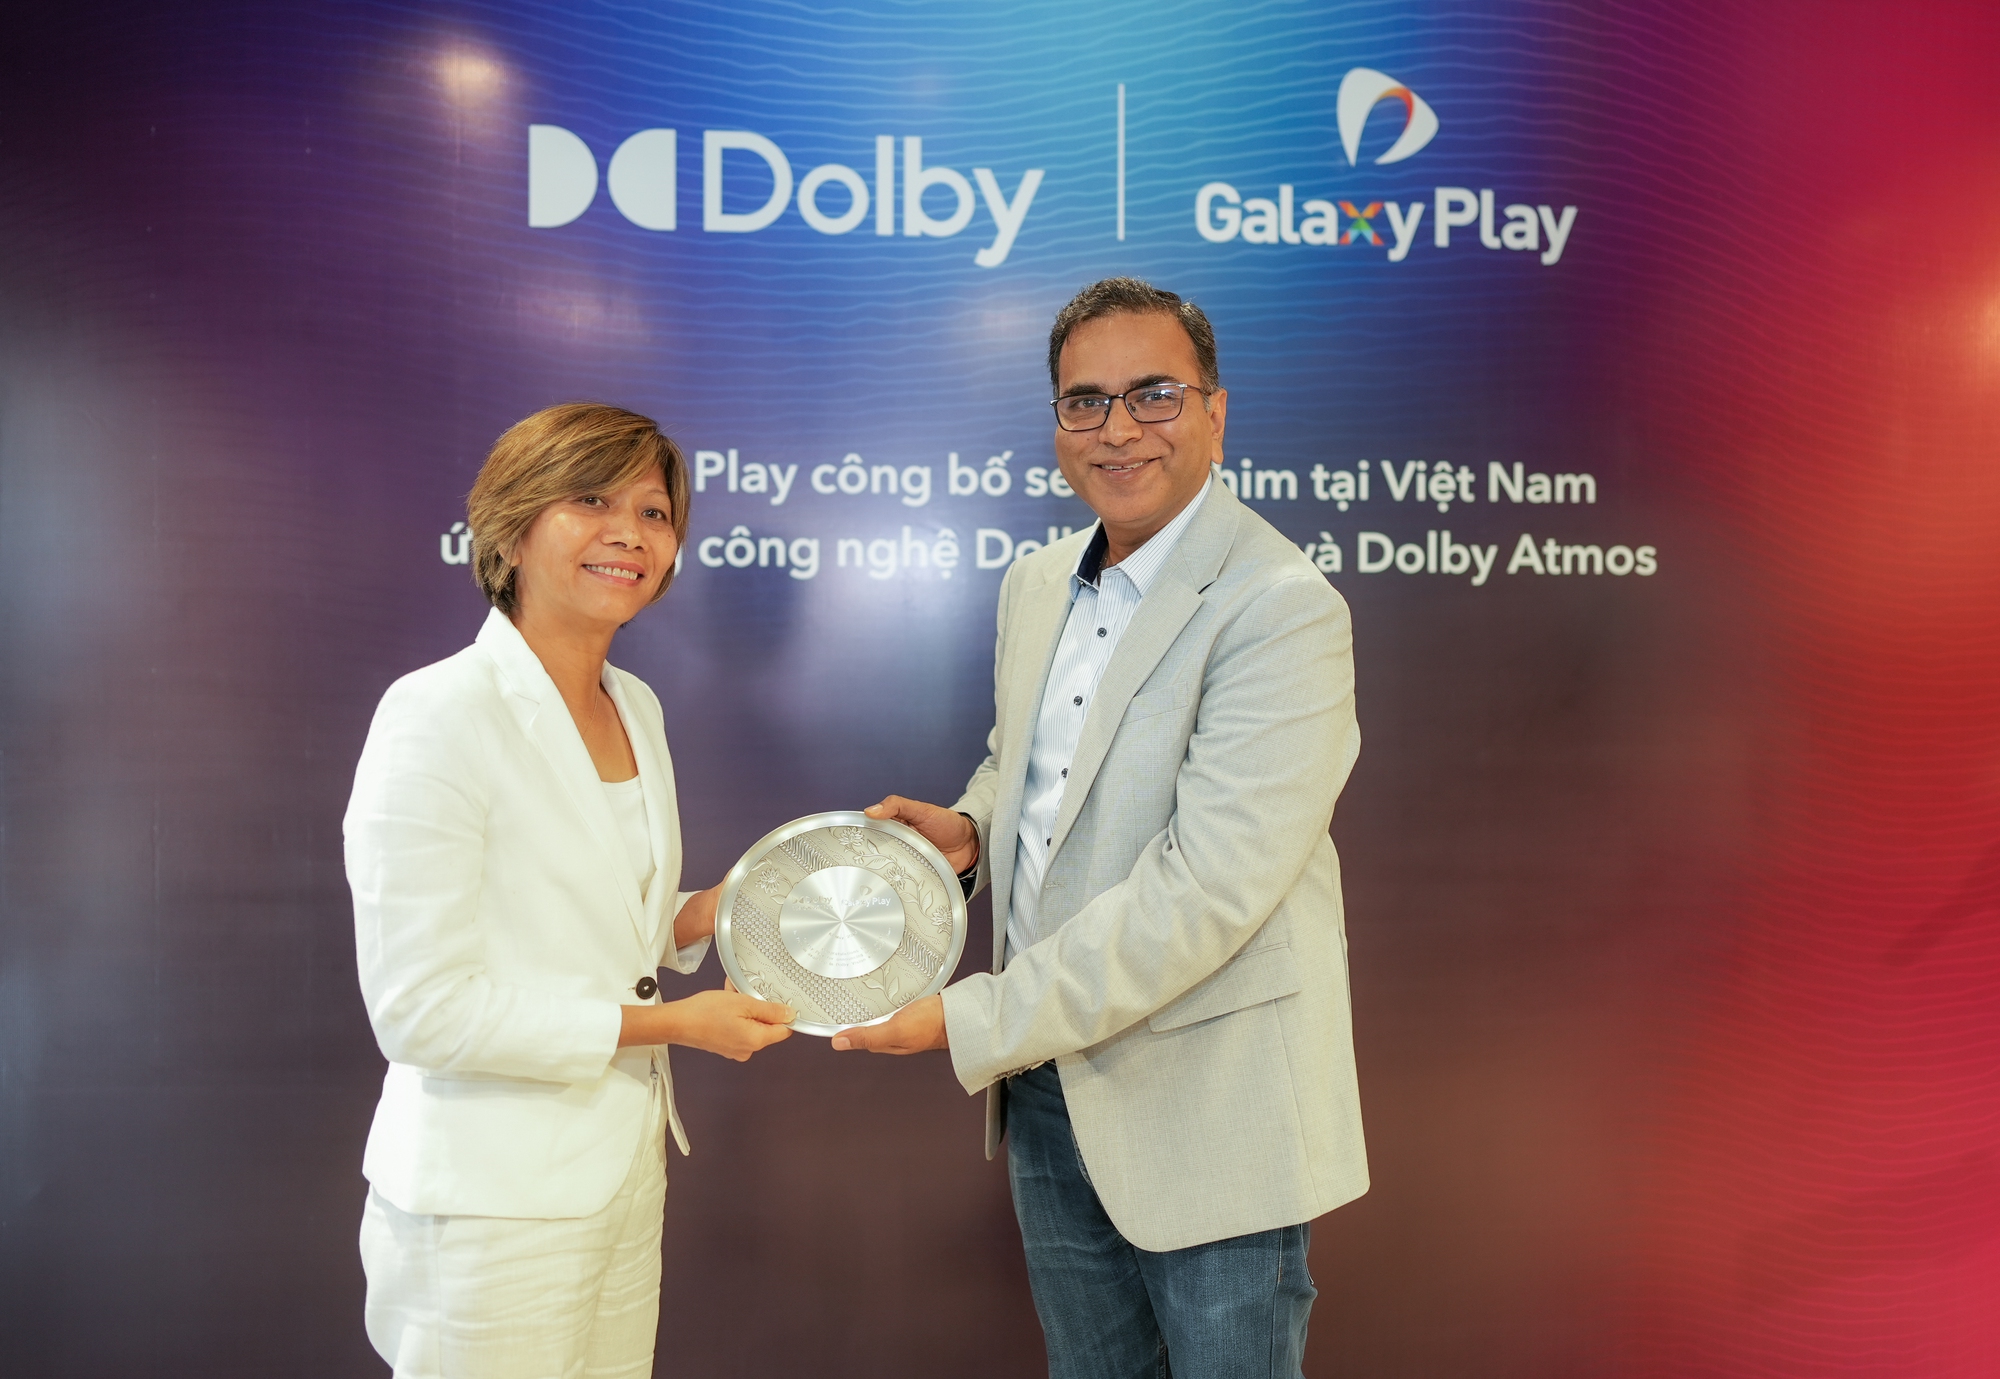 Galaxy Play ra mắt series phim ứng dụng công nghệ Dolby Vision và Dolby Atmos - Ảnh 3.